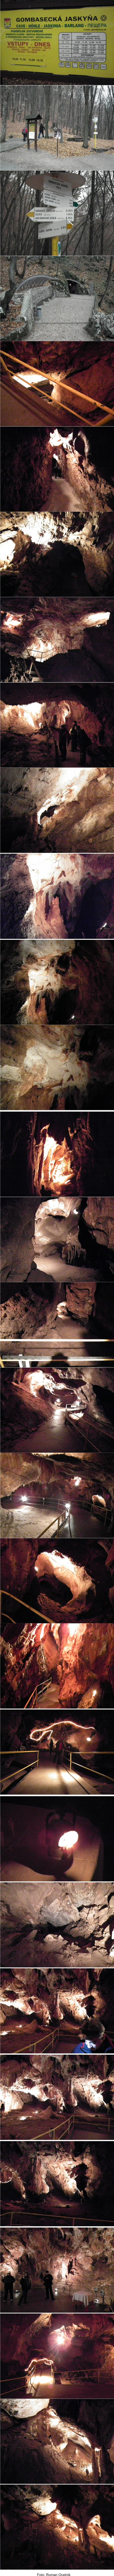 Gombasecká jaskyňa a rožňavskí speleológovia